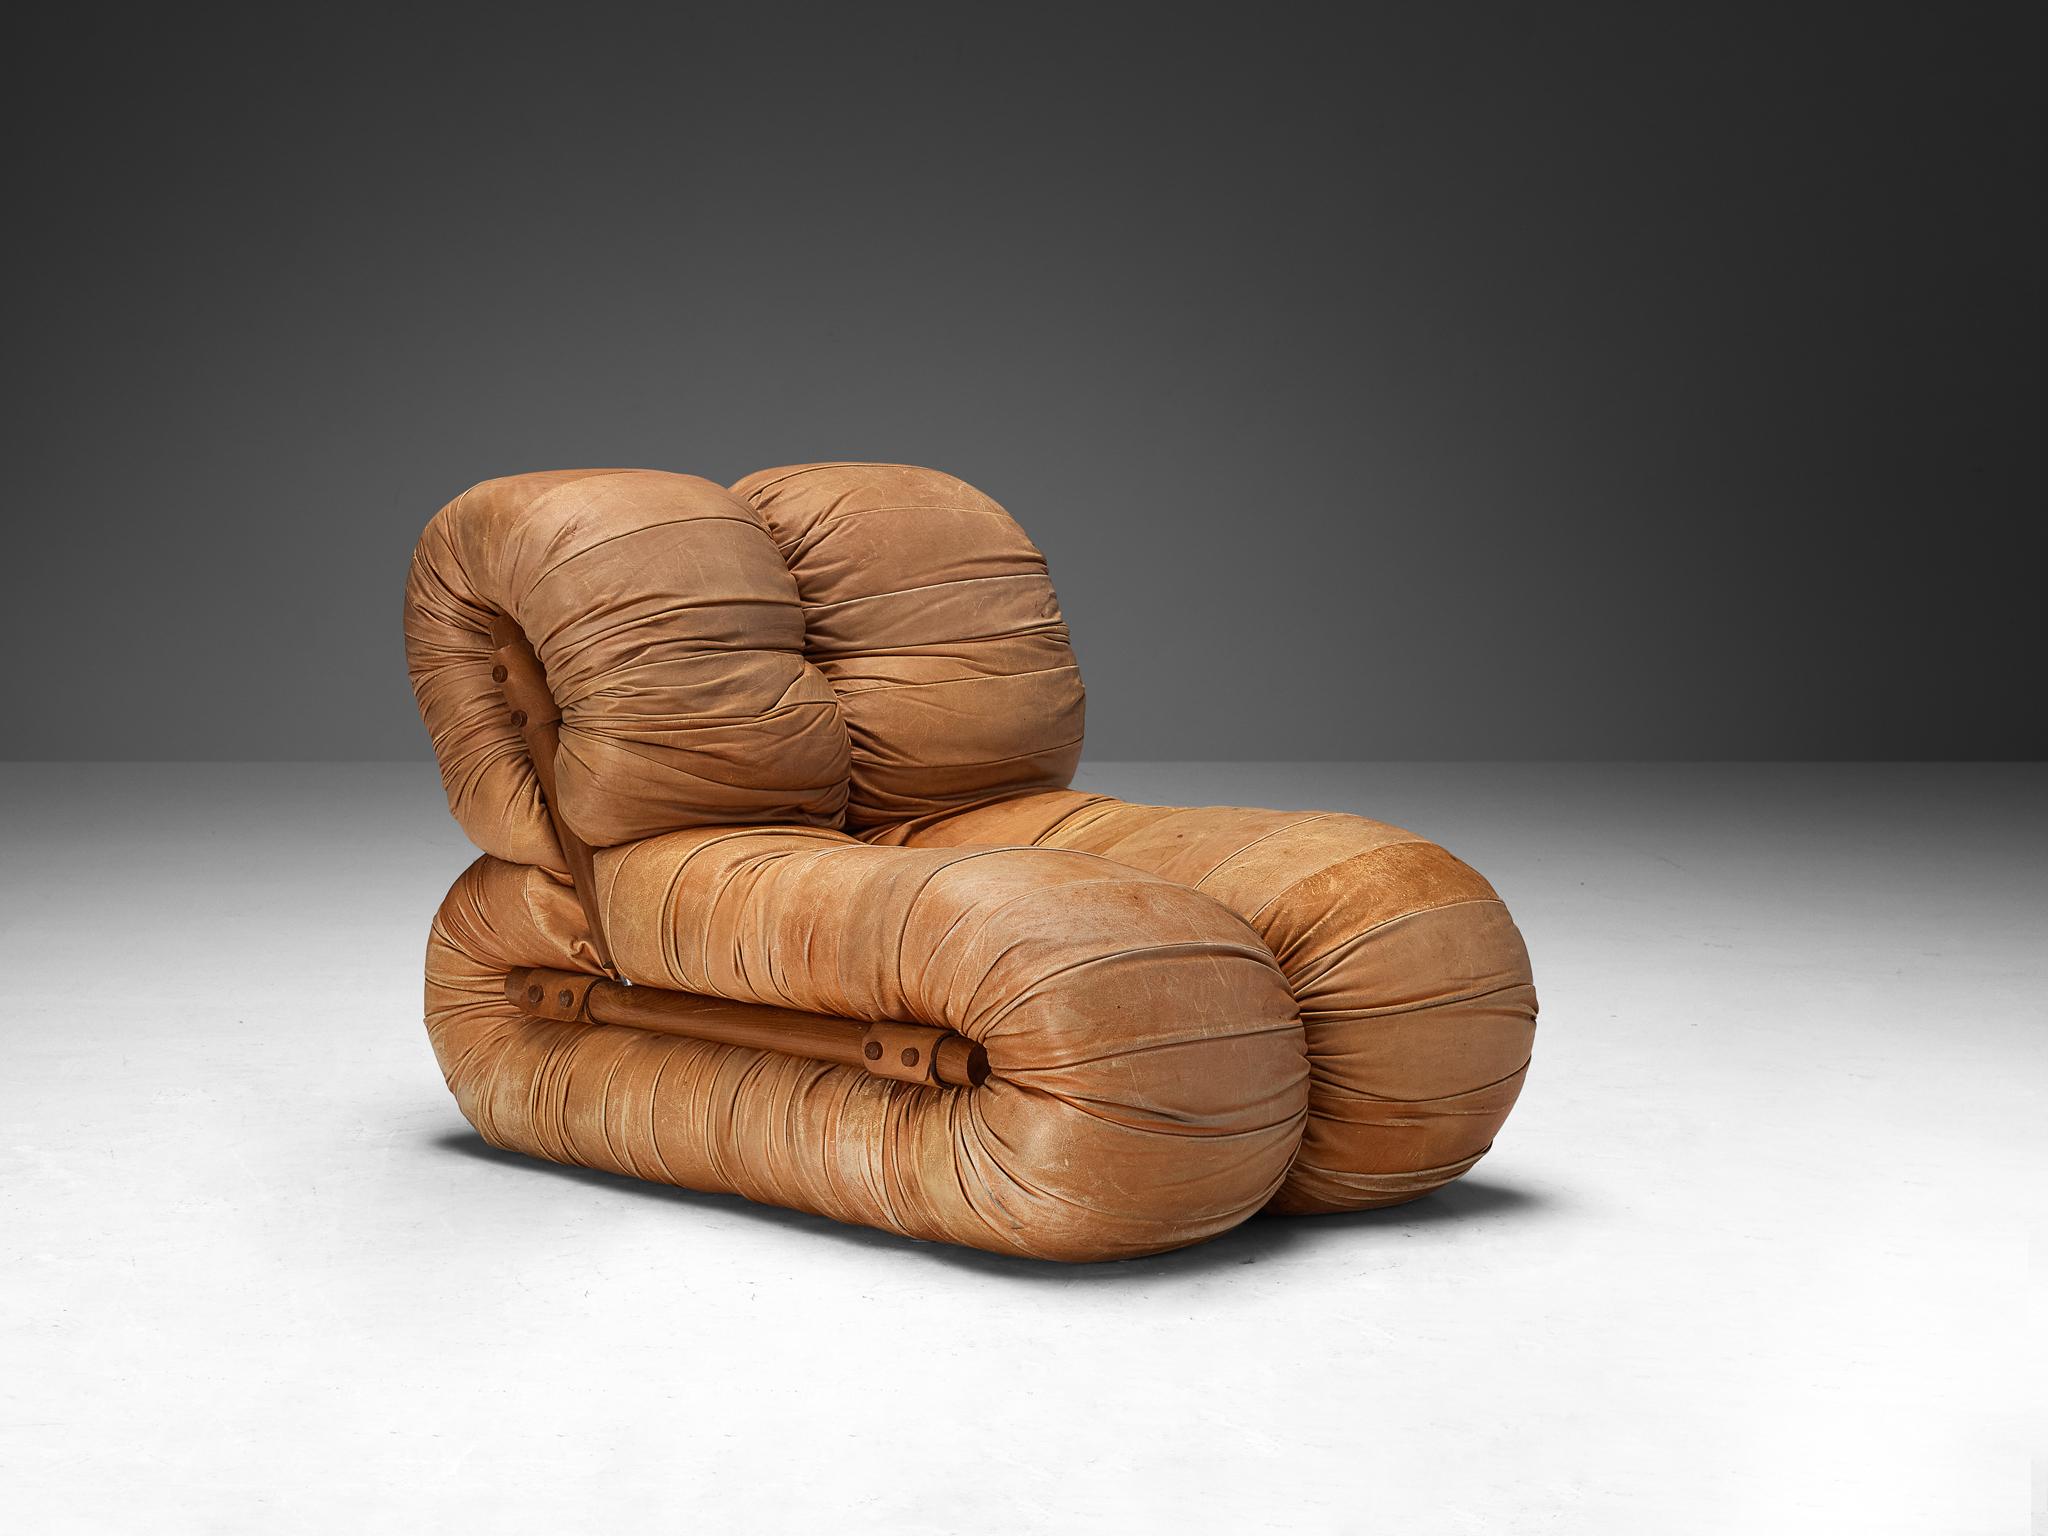 Percival Lafer, chaises longues, tissu, bois, cuir, Brésil, années 1960

Une conception phénoménale du designer Percival Lafer. Deux formes en L sont attachées l'une à l'autre, ce qui caractérise leur aspect volumineux et ludique. Le côté court